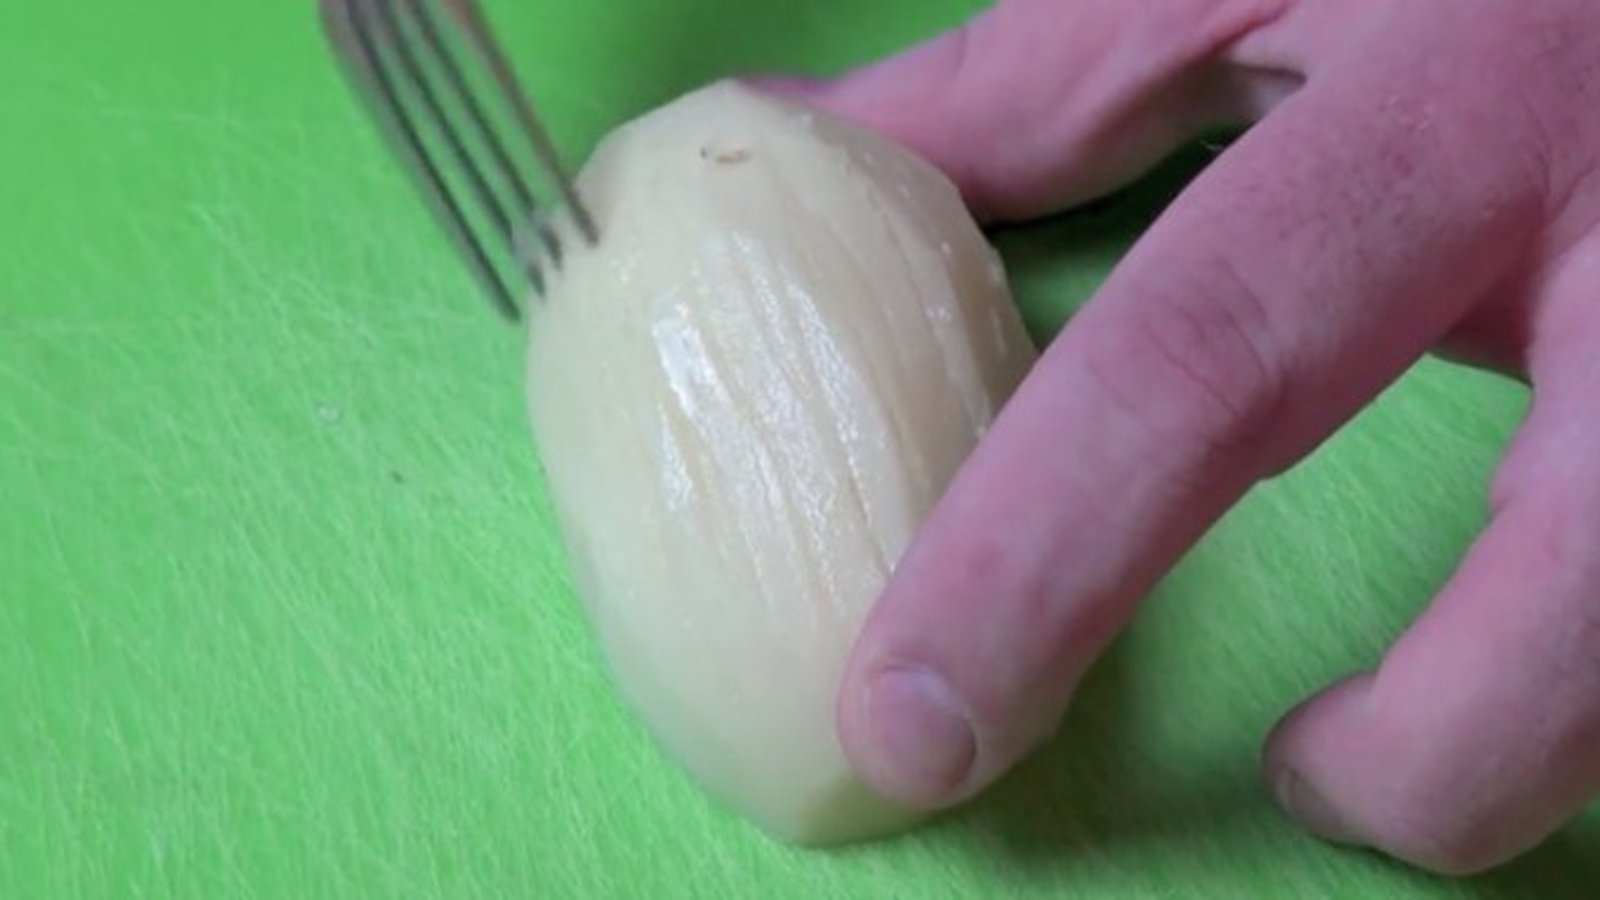 Voici ce qui se produit quand vous passez une fourchette sur une patate